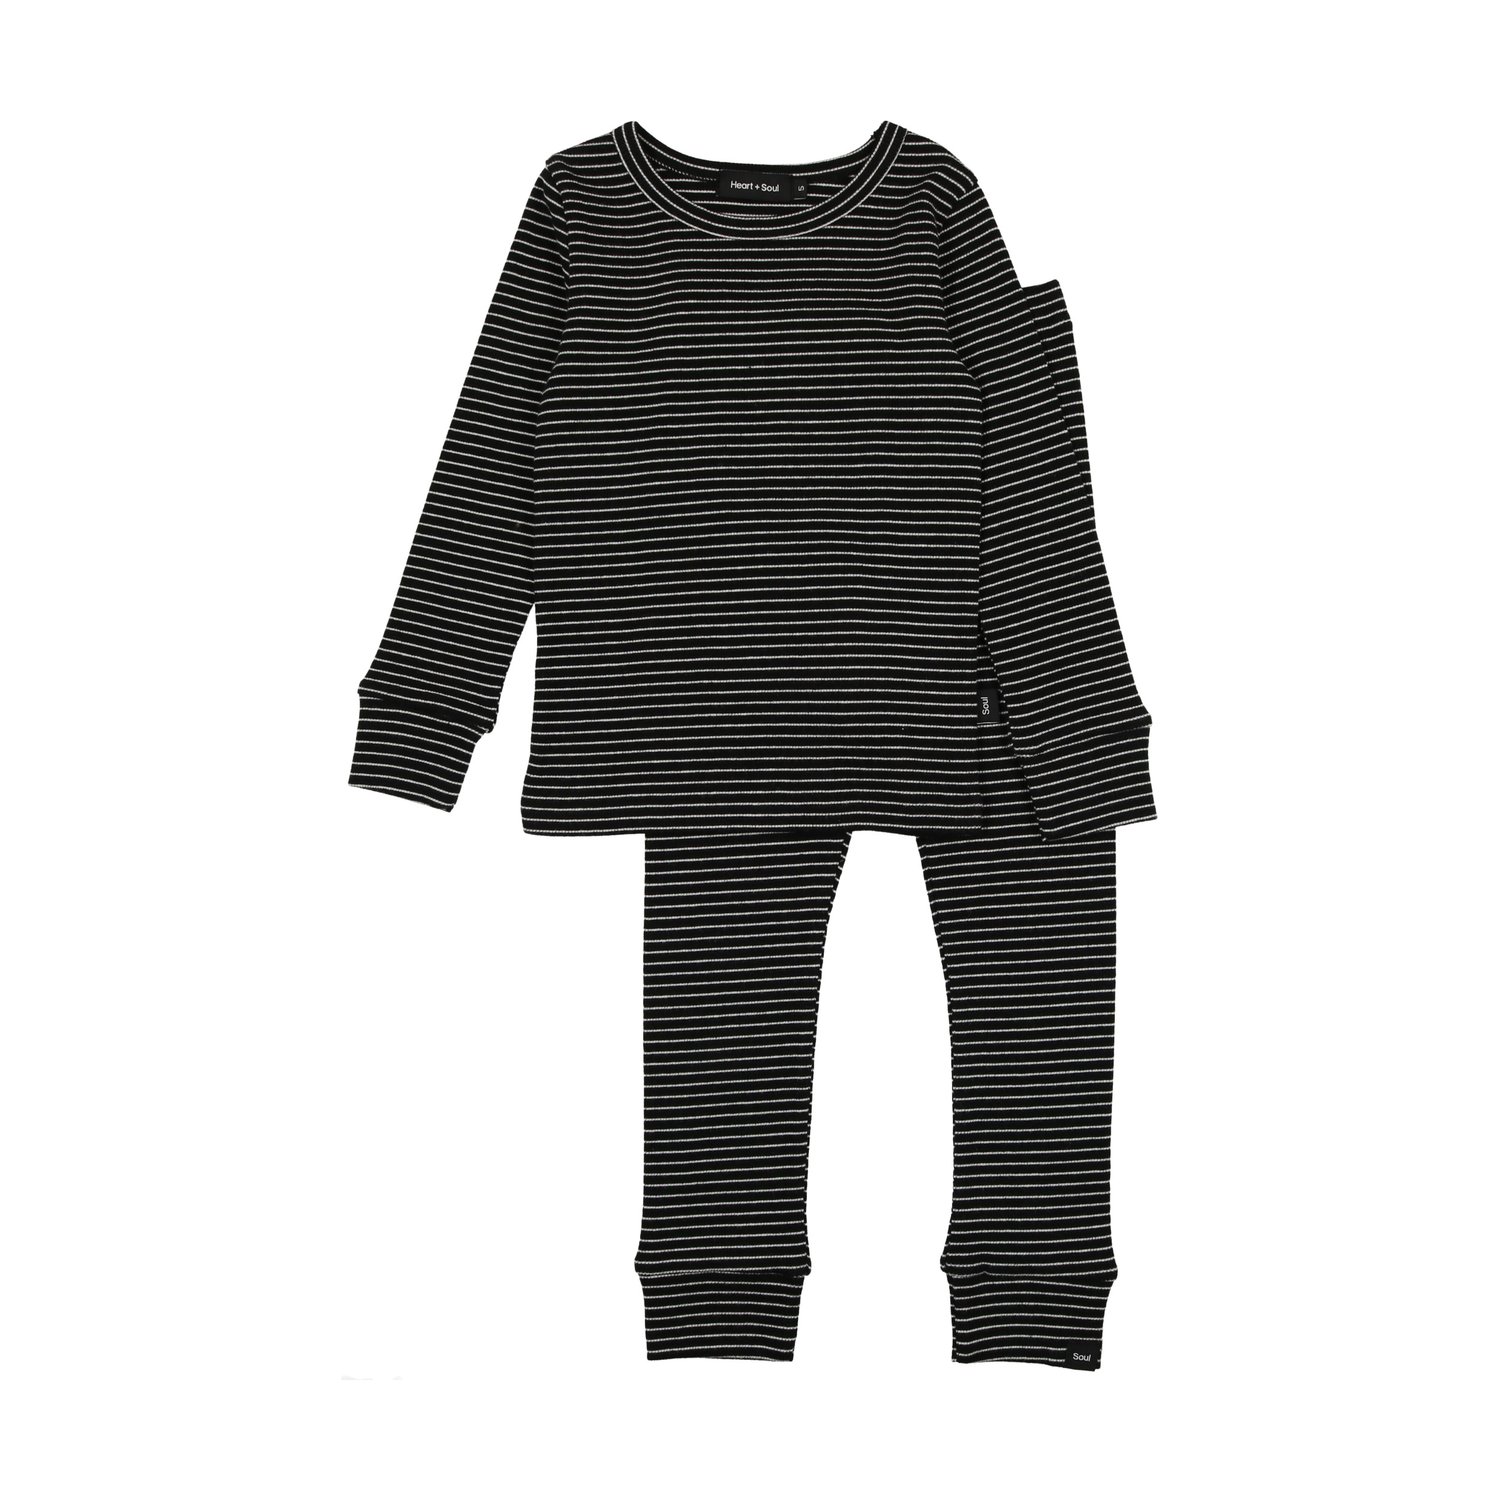 Jersey pyjamas - Black/Striped - Ladies